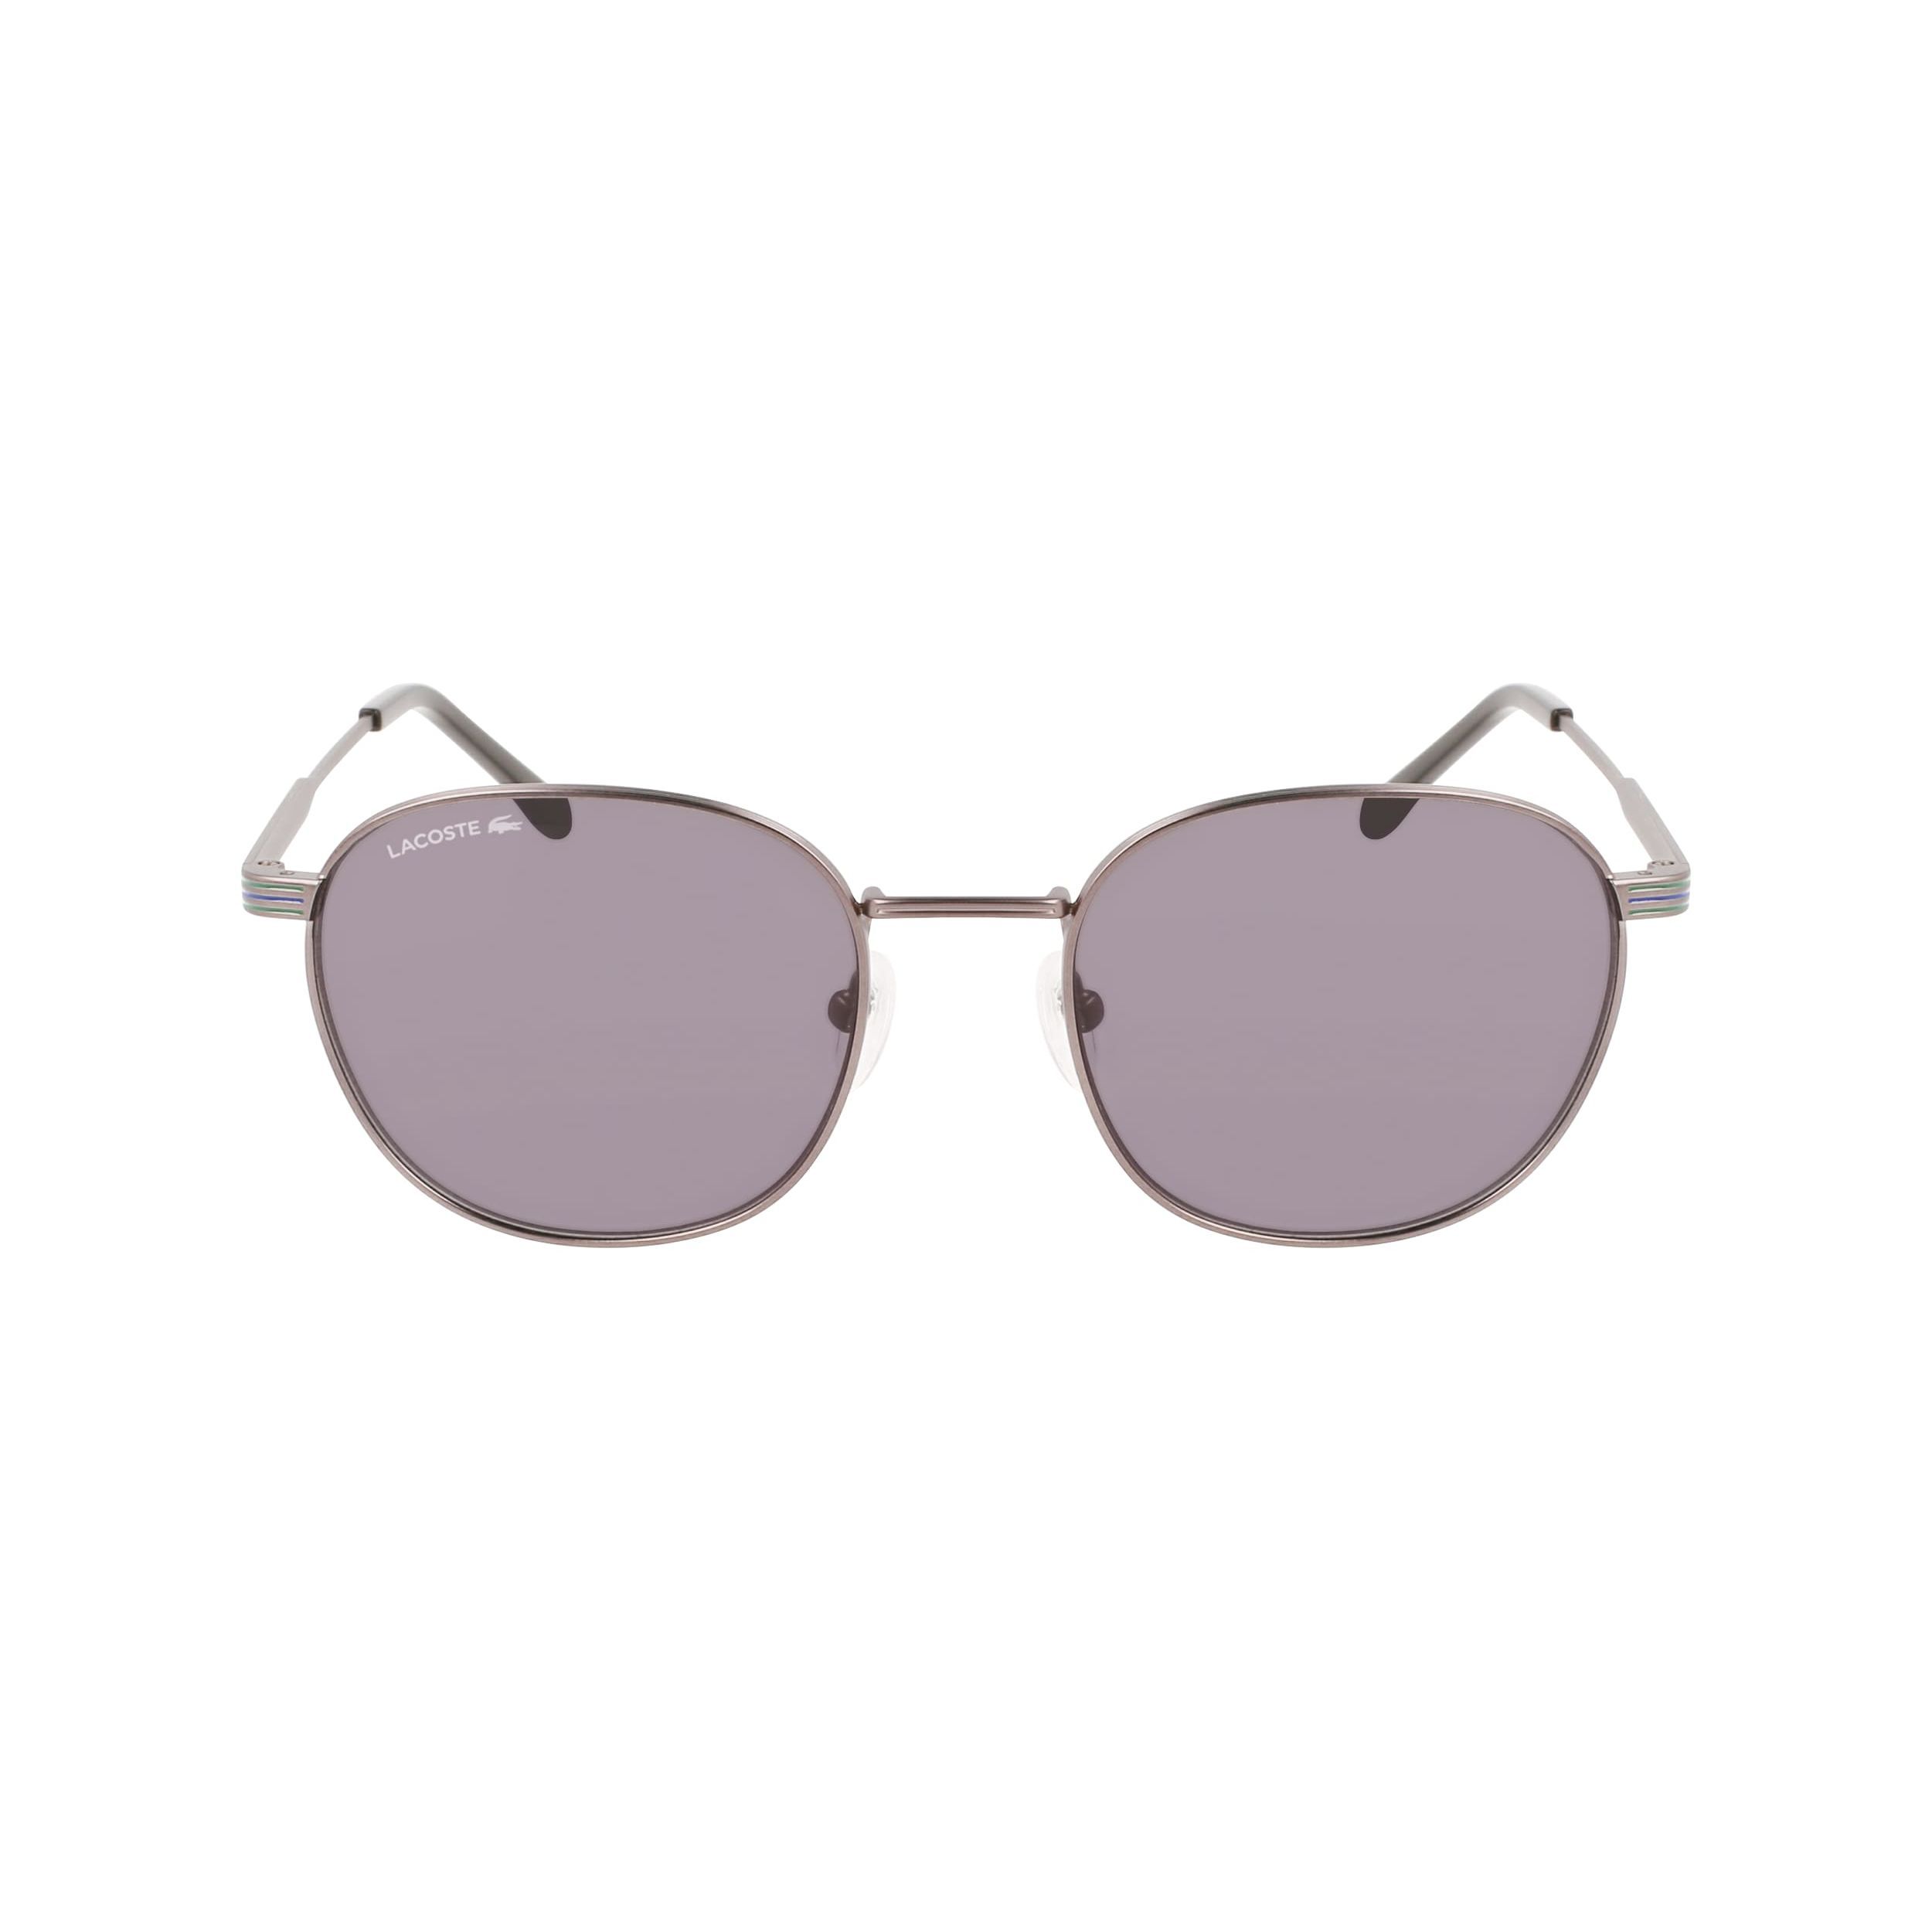 L251S Round Sunglasses 901 - size 52